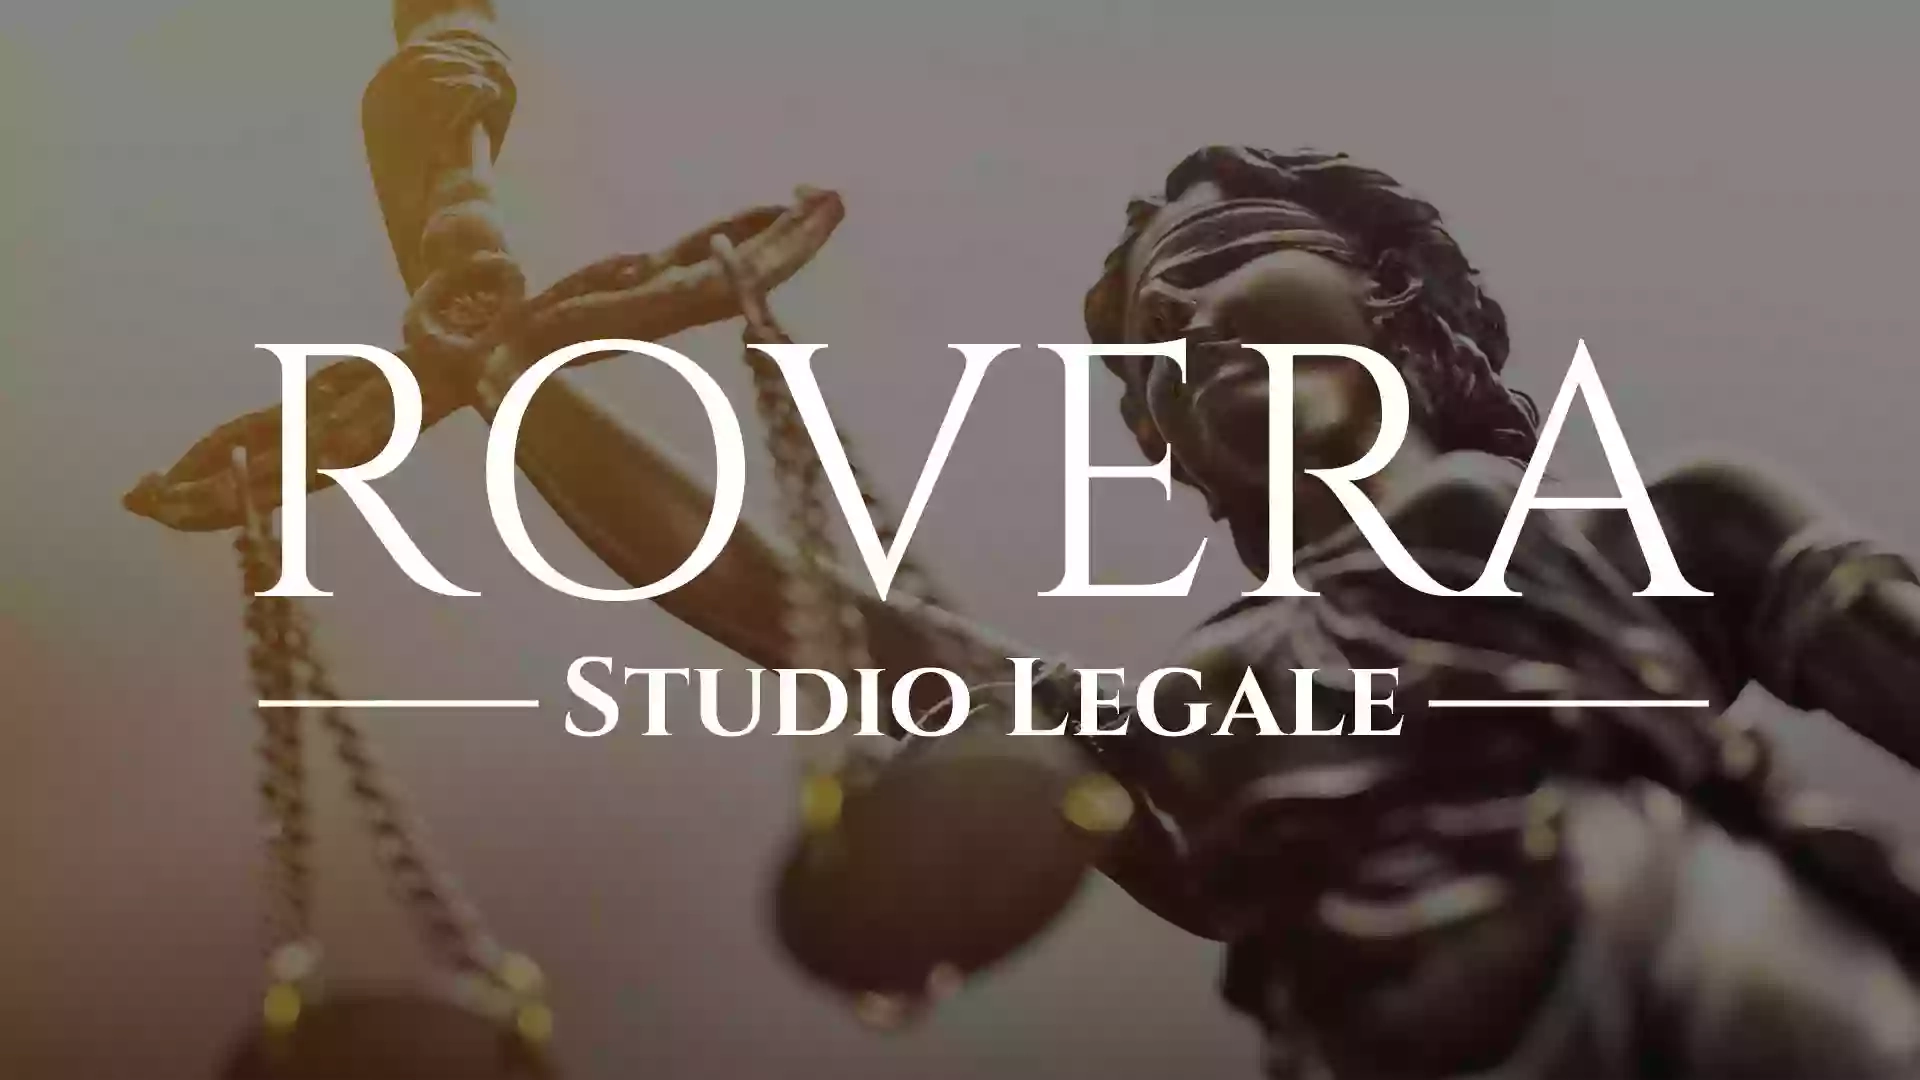 Studio legale Rovera